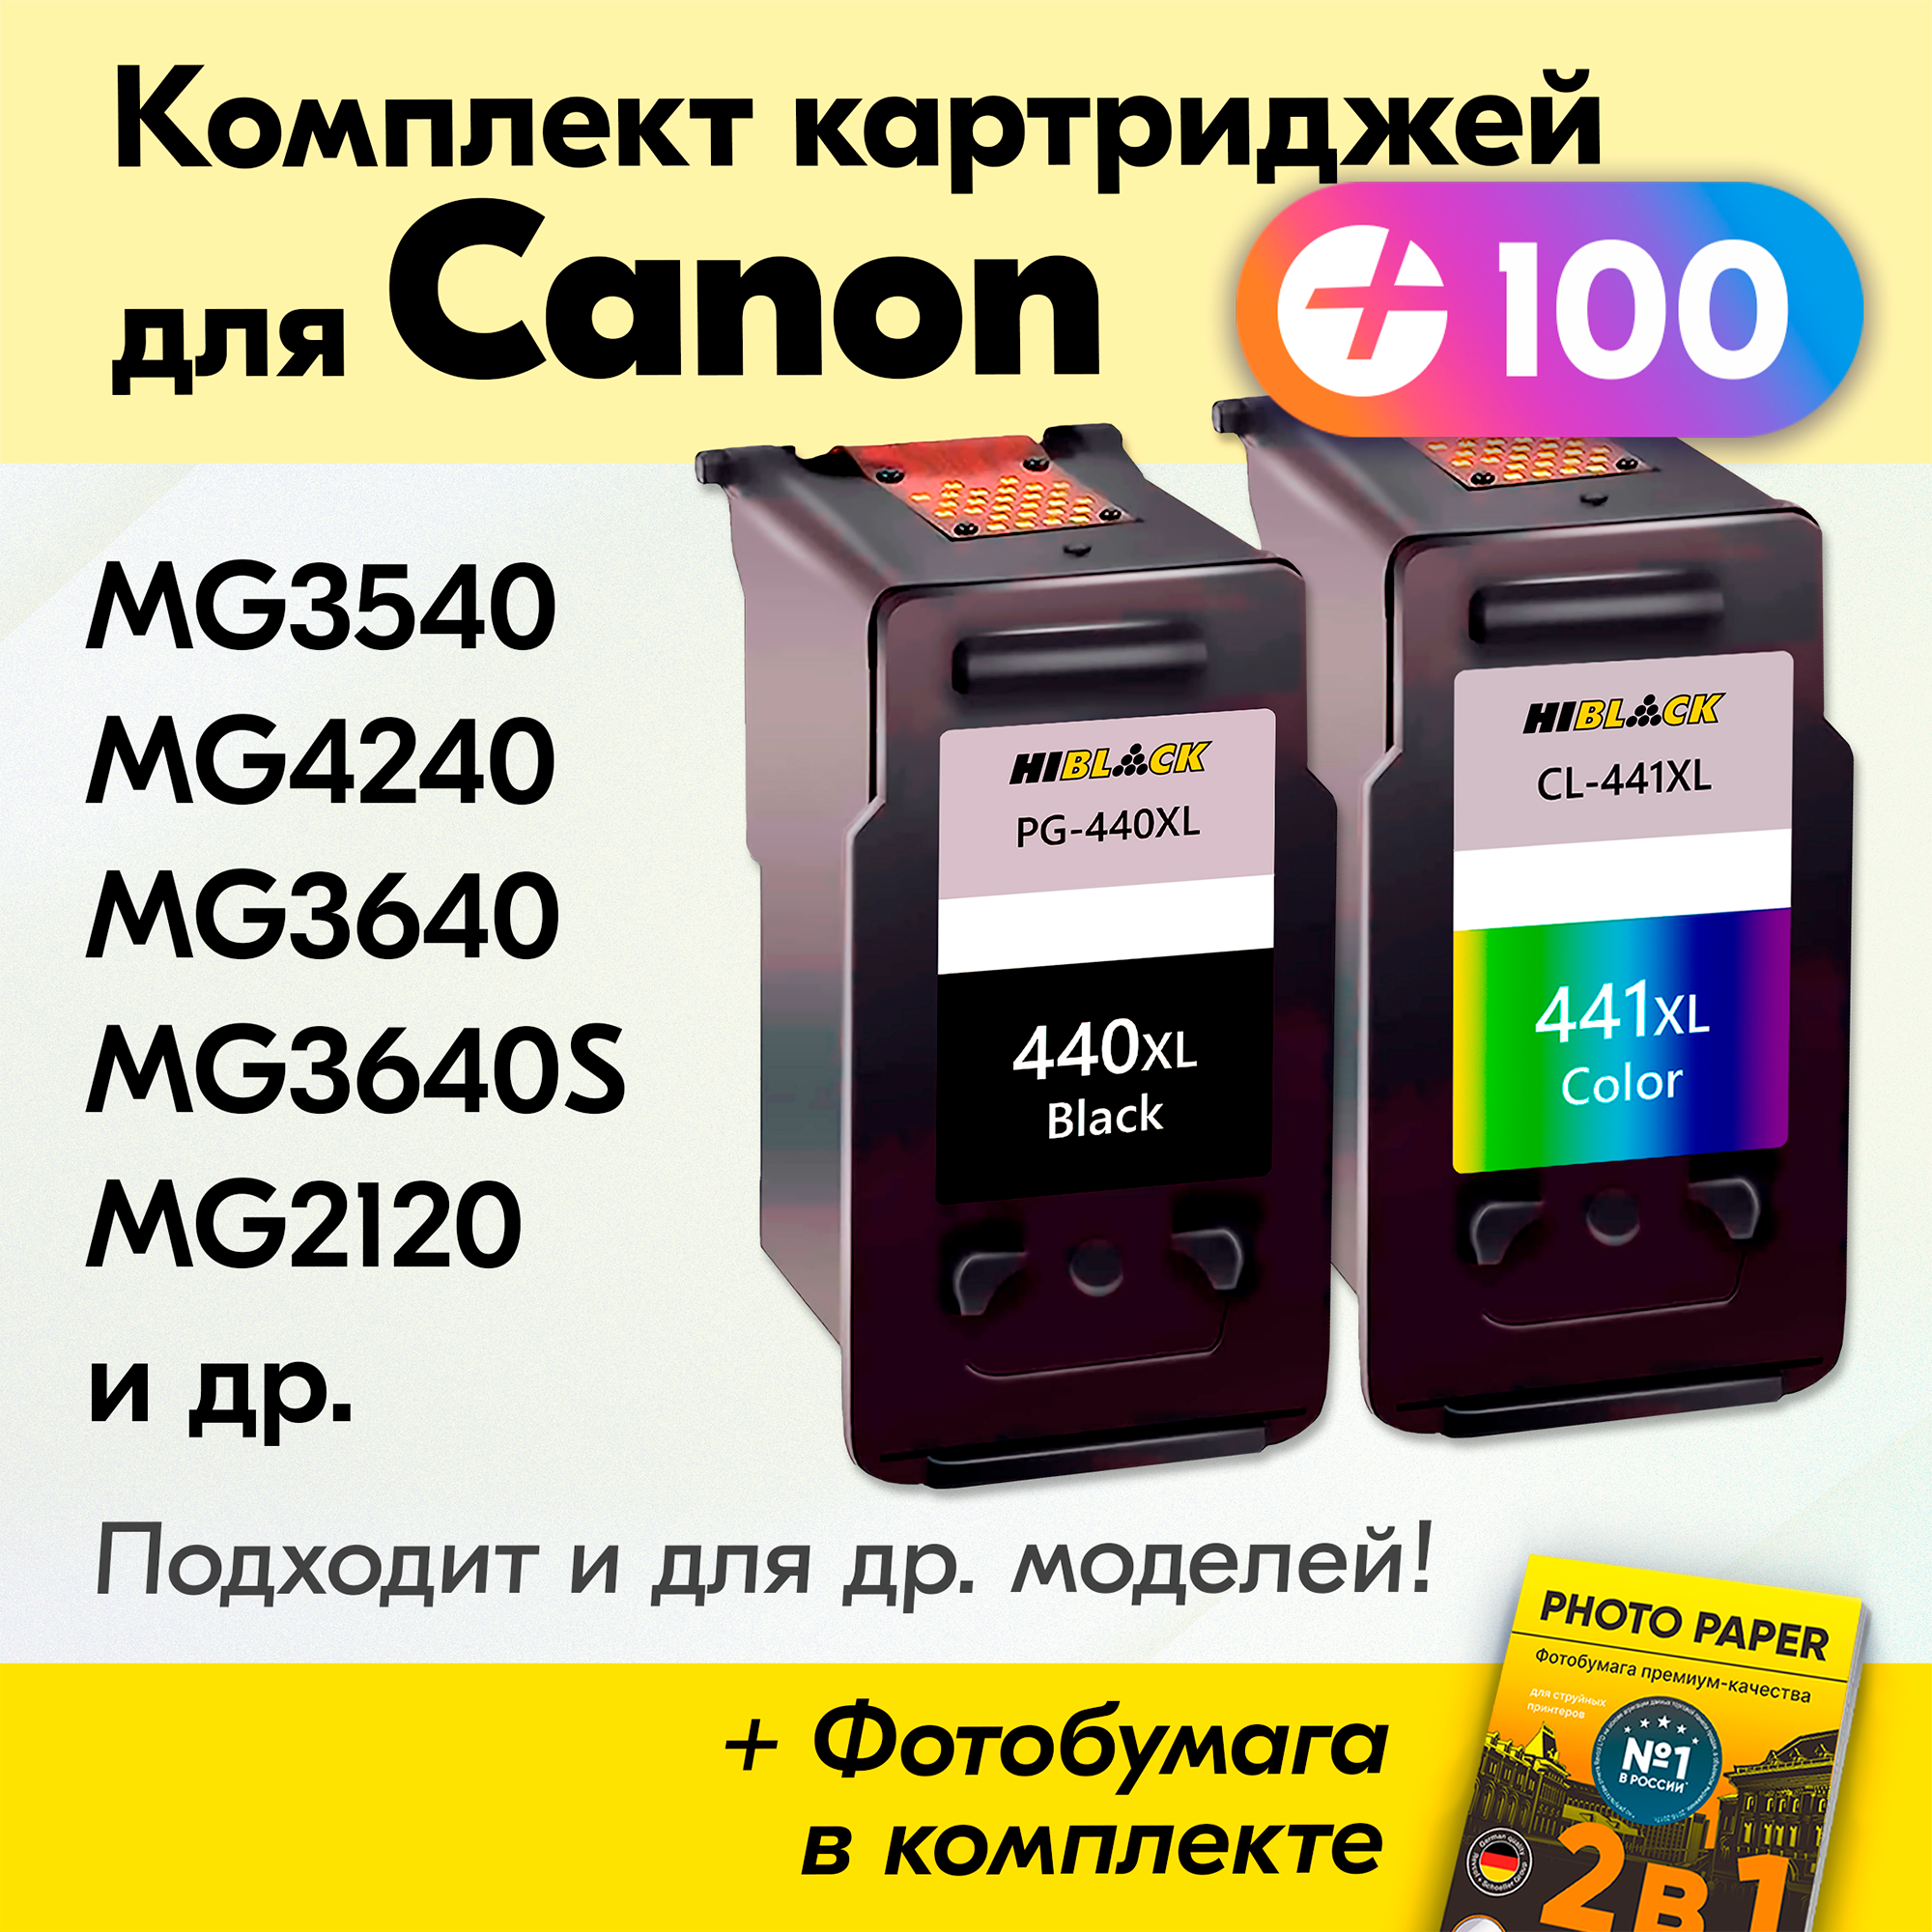 Картриджи для Canon PG-440XL, CL-441XL, Canon PIXMA MG3640, MG3640S, MG3540, TS5140, Черный (Black), Цветной (Color), увеличенный объем, заправляемые